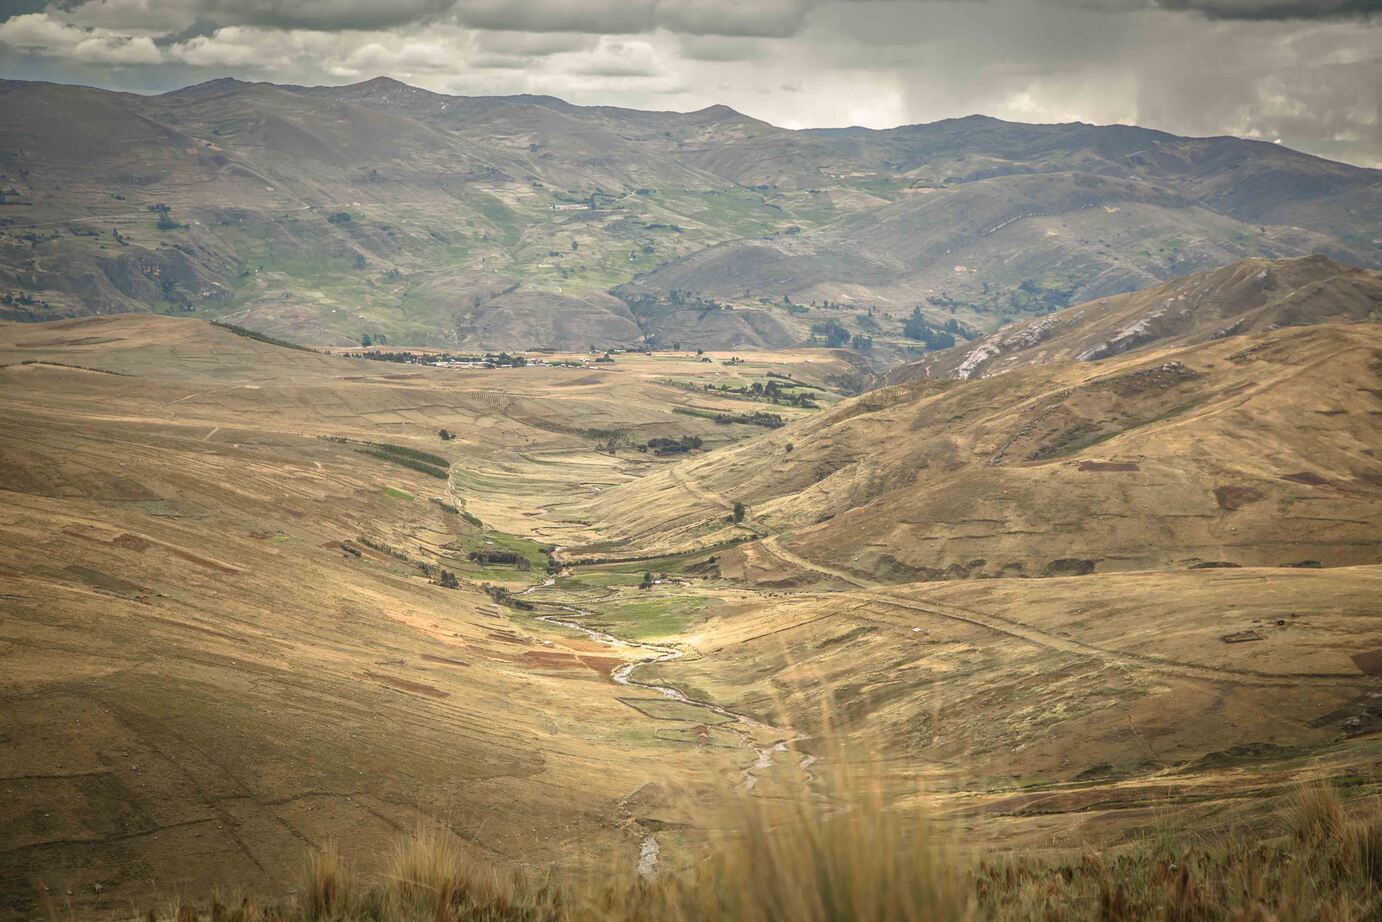 Remote Peru